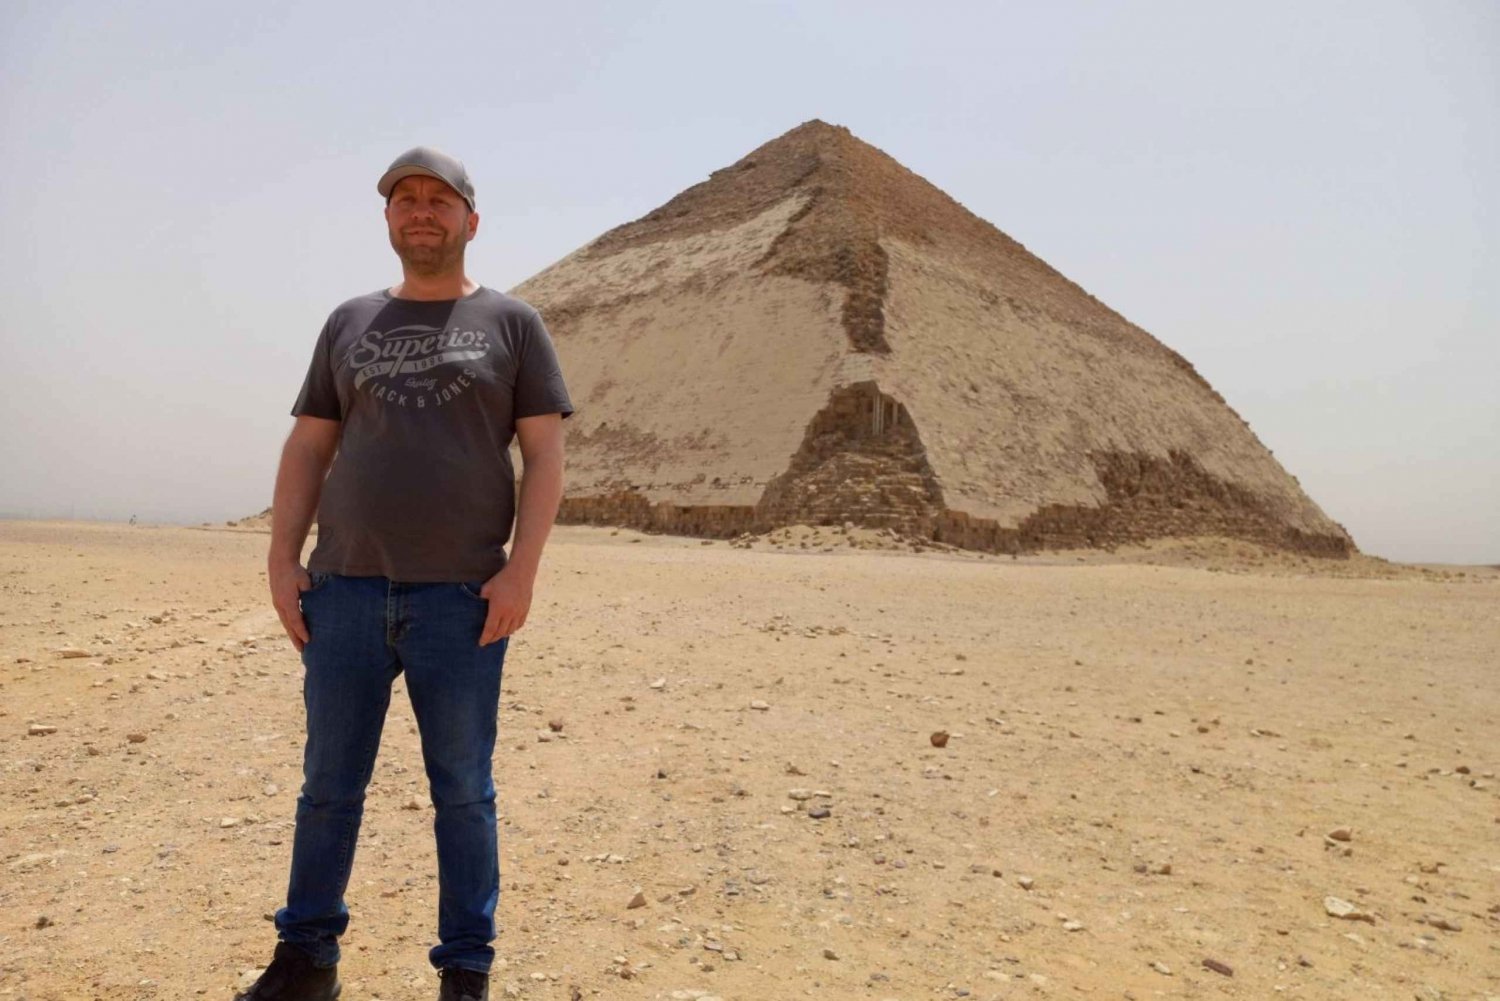 Fra Kairo/Giza: Tur til Sakkara, Dahshur-pyramidene og Memphis